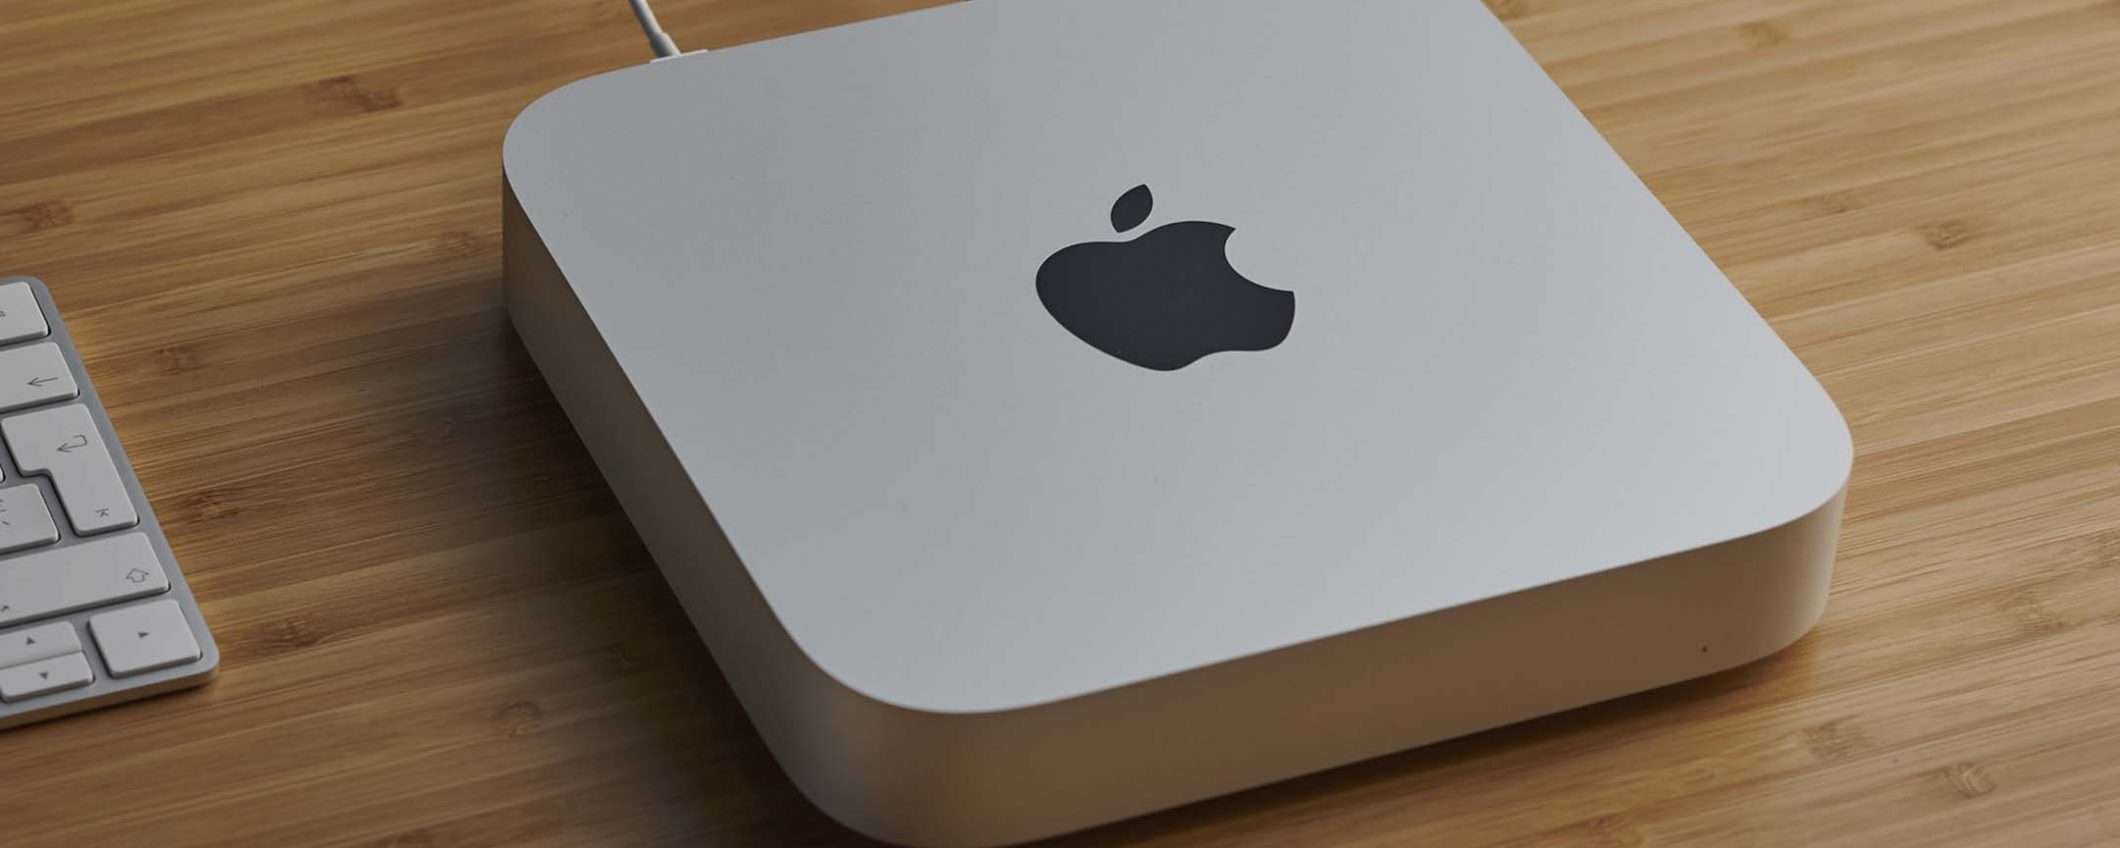 Apple Mac Mini M1: incredibile calo di prezzo (MINIMO STORICO)